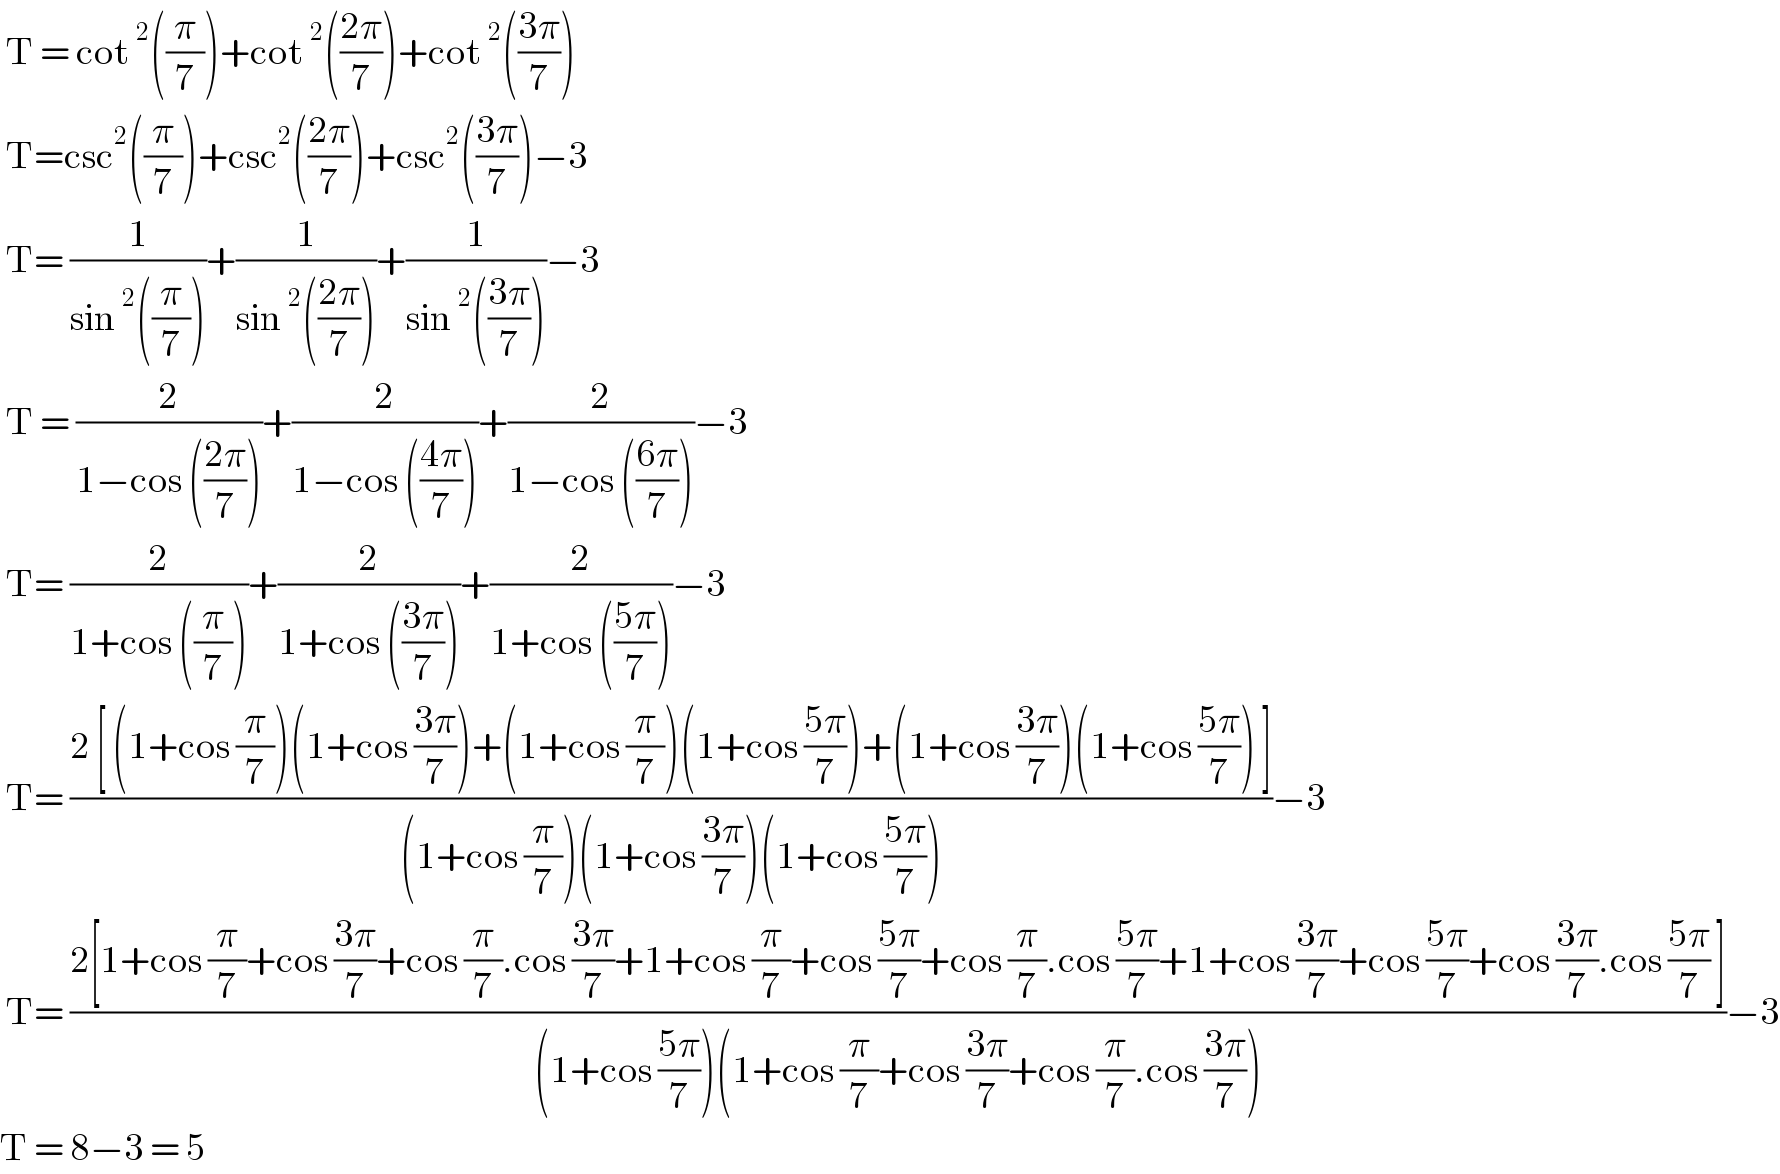  T = cot^2 ((π/7))+cot^2 (((2π)/7))+cot^2 (((3π)/7))   T=csc^2 ((π/7))+csc^2 (((2π)/7))+csc^2 (((3π)/7))−3   T= (1/(sin^2 ((π/7))))+(1/(sin^2 (((2π)/7))))+(1/(sin^2 (((3π)/7))))−3   T = (2/(1−cos (((2π)/7))))+(2/(1−cos (((4π)/7))))+(2/(1−cos (((6π)/7))))−3   T= (2/(1+cos ((π/7))))+(2/(1+cos (((3π)/7))))+(2/(1+cos (((5π)/7))))−3   T= ((2 [ (1+cos (π/7))(1+cos ((3π)/7))+(1+cos (π/7))(1+cos ((5π)/7))+(1+cos ((3π)/7))(1+cos ((5π)/7)) ])/((1+cos (π/7))(1+cos ((3π)/7))(1+cos ((5π)/7))))−3   T= ((2[1+cos (π/7)+cos ((3π)/7)+cos (π/7).cos ((3π)/7)+1+cos (π/7)+cos ((5π)/7)+cos (π/7).cos ((5π)/7)+1+cos ((3π)/7)+cos ((5π)/7)+cos ((3π)/7).cos ((5π)/7) ])/((1+cos ((5π)/7))(1+cos (π/7)+cos ((3π)/7)+cos (π/7).cos ((3π)/7))))−3  T = 8−3 = 5   